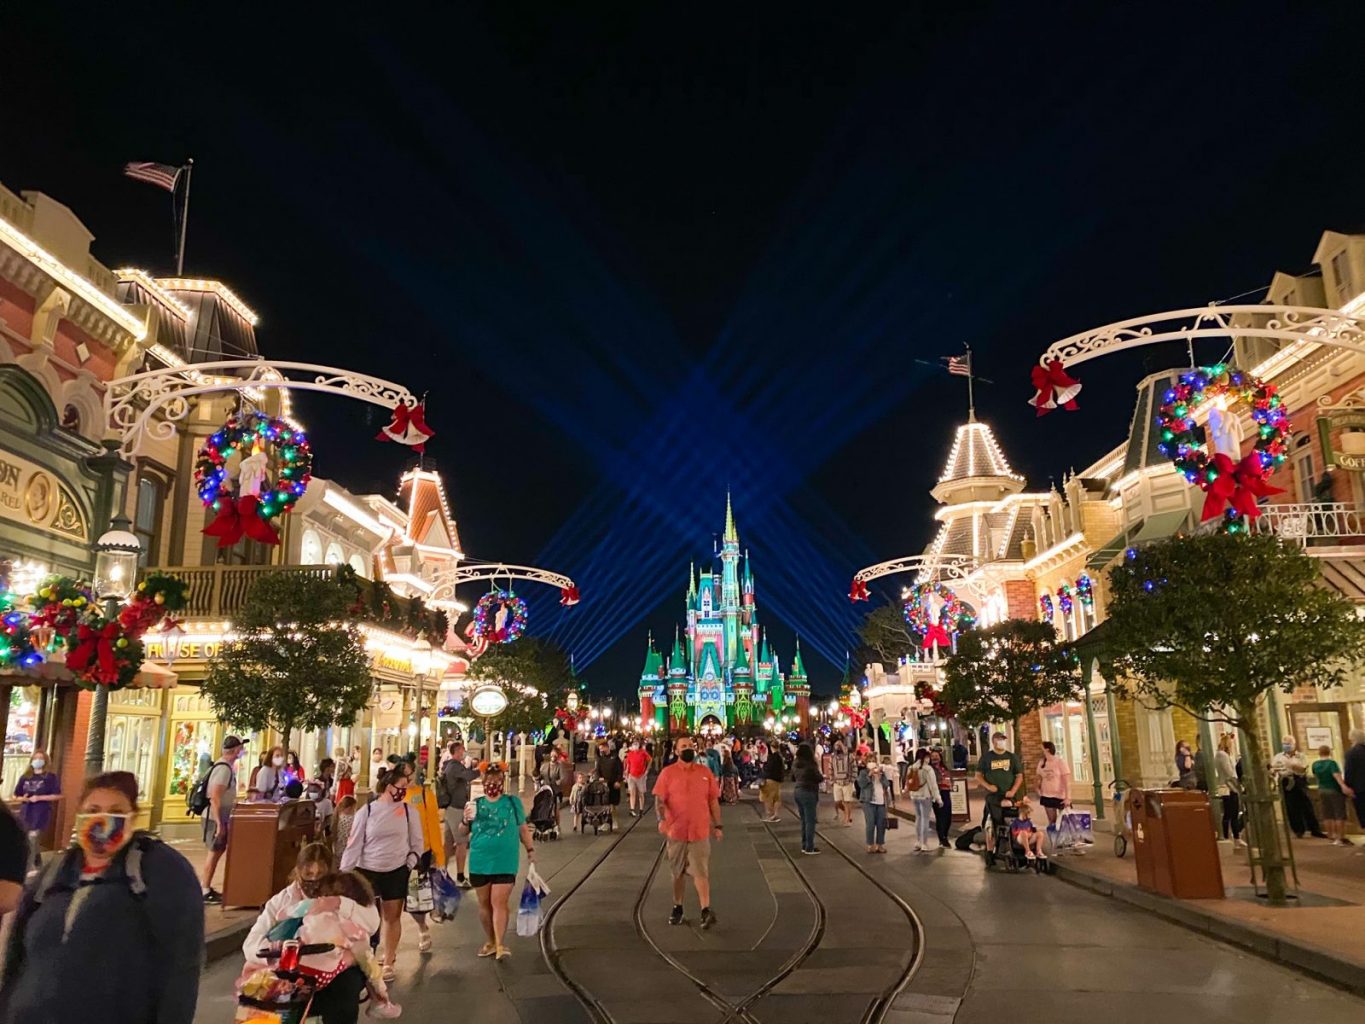 Main Street at Disney at night in 2020